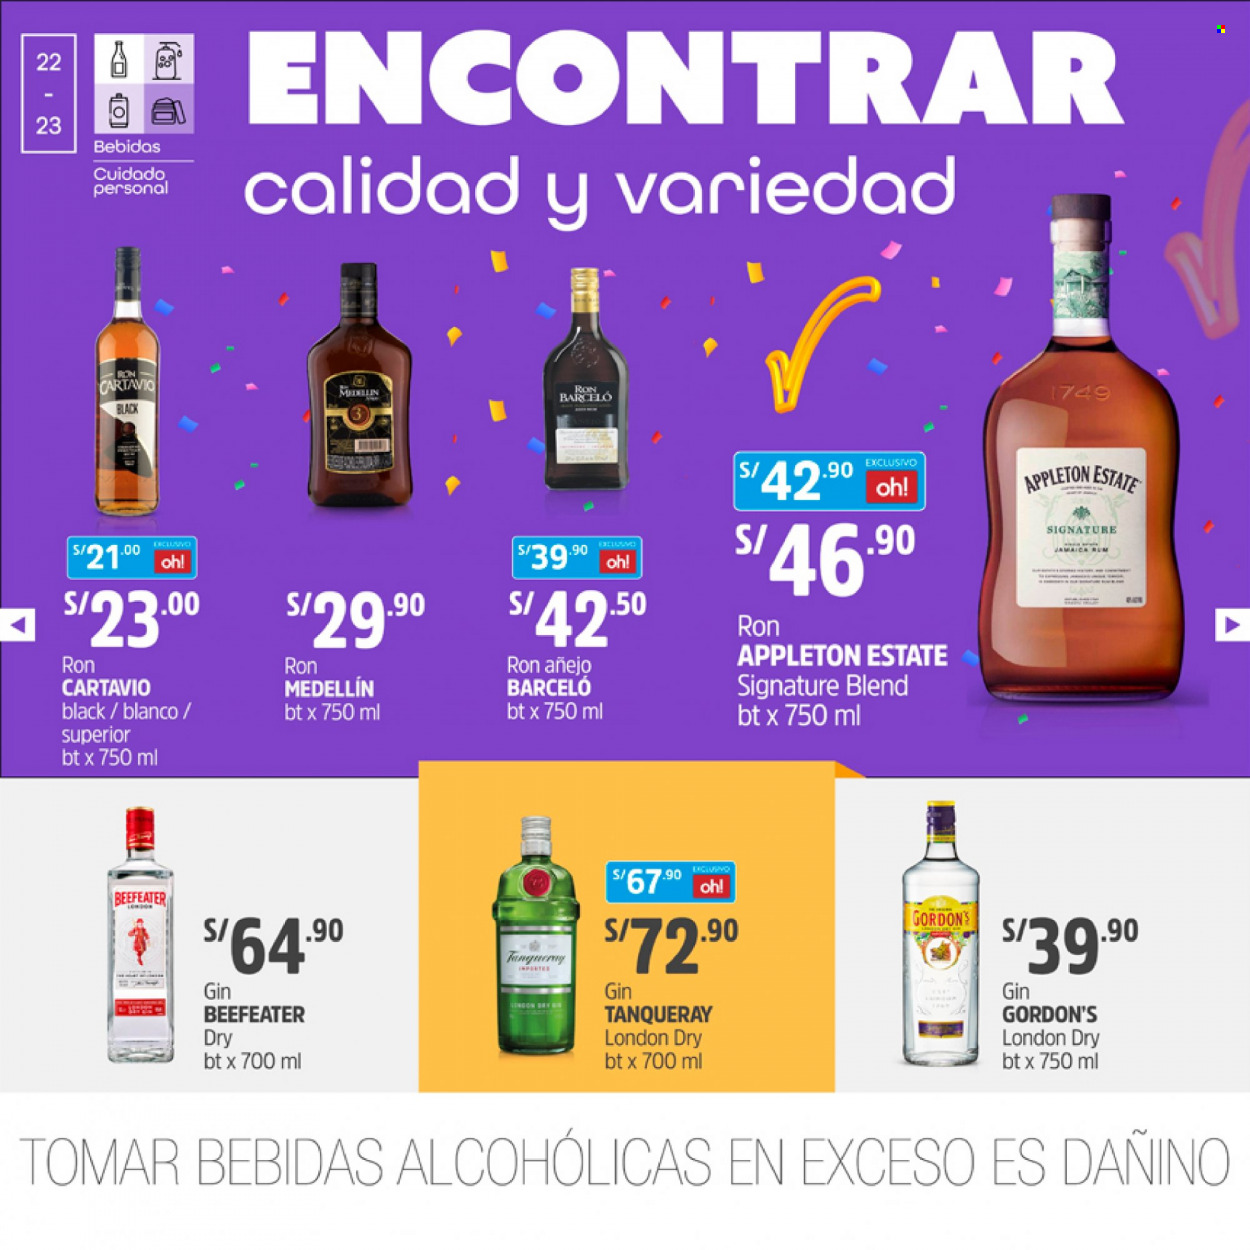 thumbnail - Folleto actual Plaza Vea - 16.10.2021 - 31.10.2021 - Ventas - bebida, ron, Barceló, Beefeater, gin, Gordon’s, Tanqueray, bebida alcohólica. Página 22.